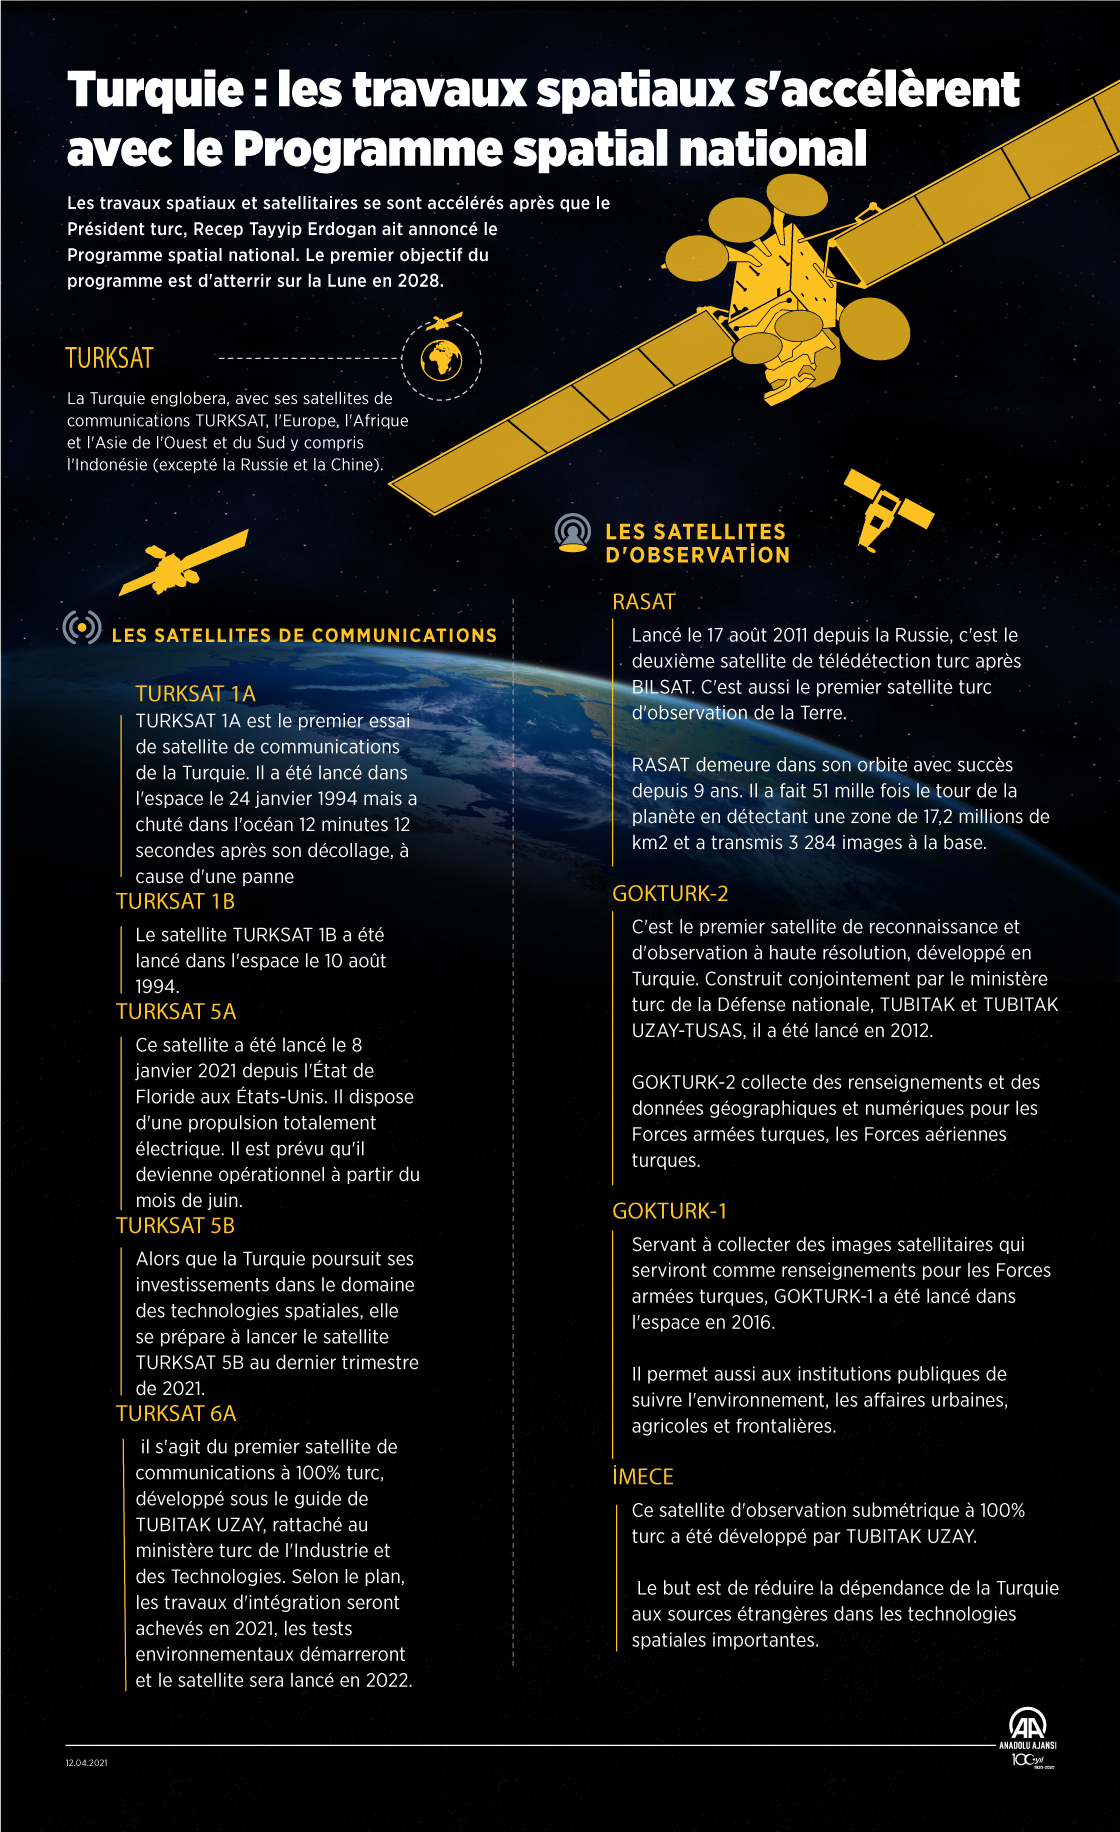  [Infographie] Turquie : les travaux spatiaux s'accélèrent avec le Programme spatial national